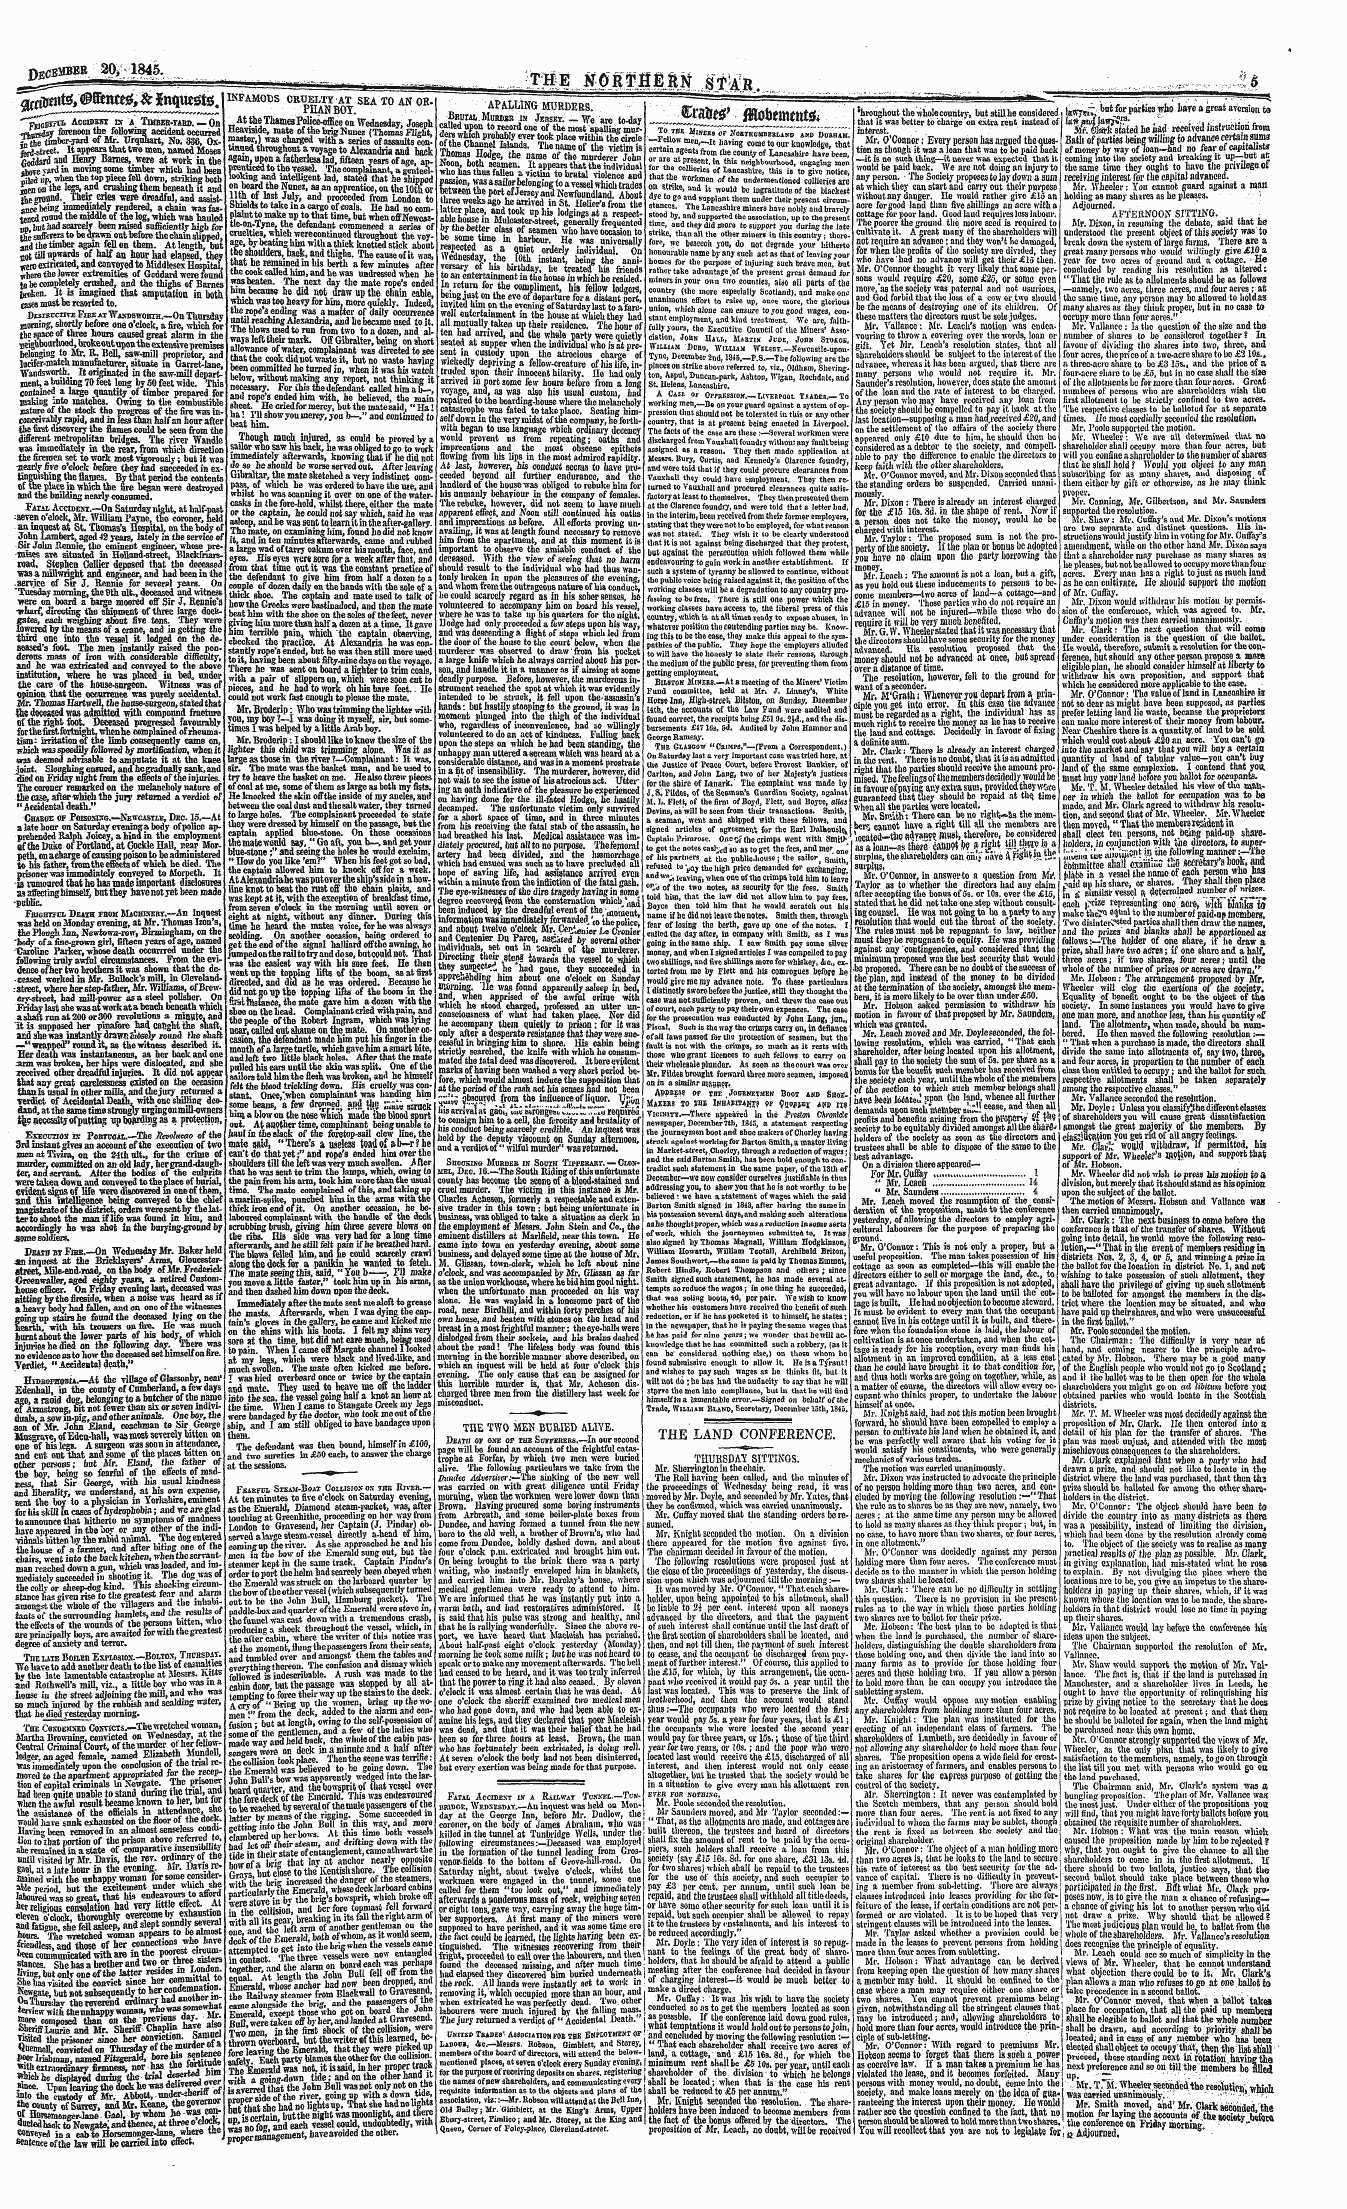 Northern Star (1837-1852): jS F Y, 4th edition - _ R _M^Sv- —--—<-*--*^-V-*R*'* Tj_*St 'L...